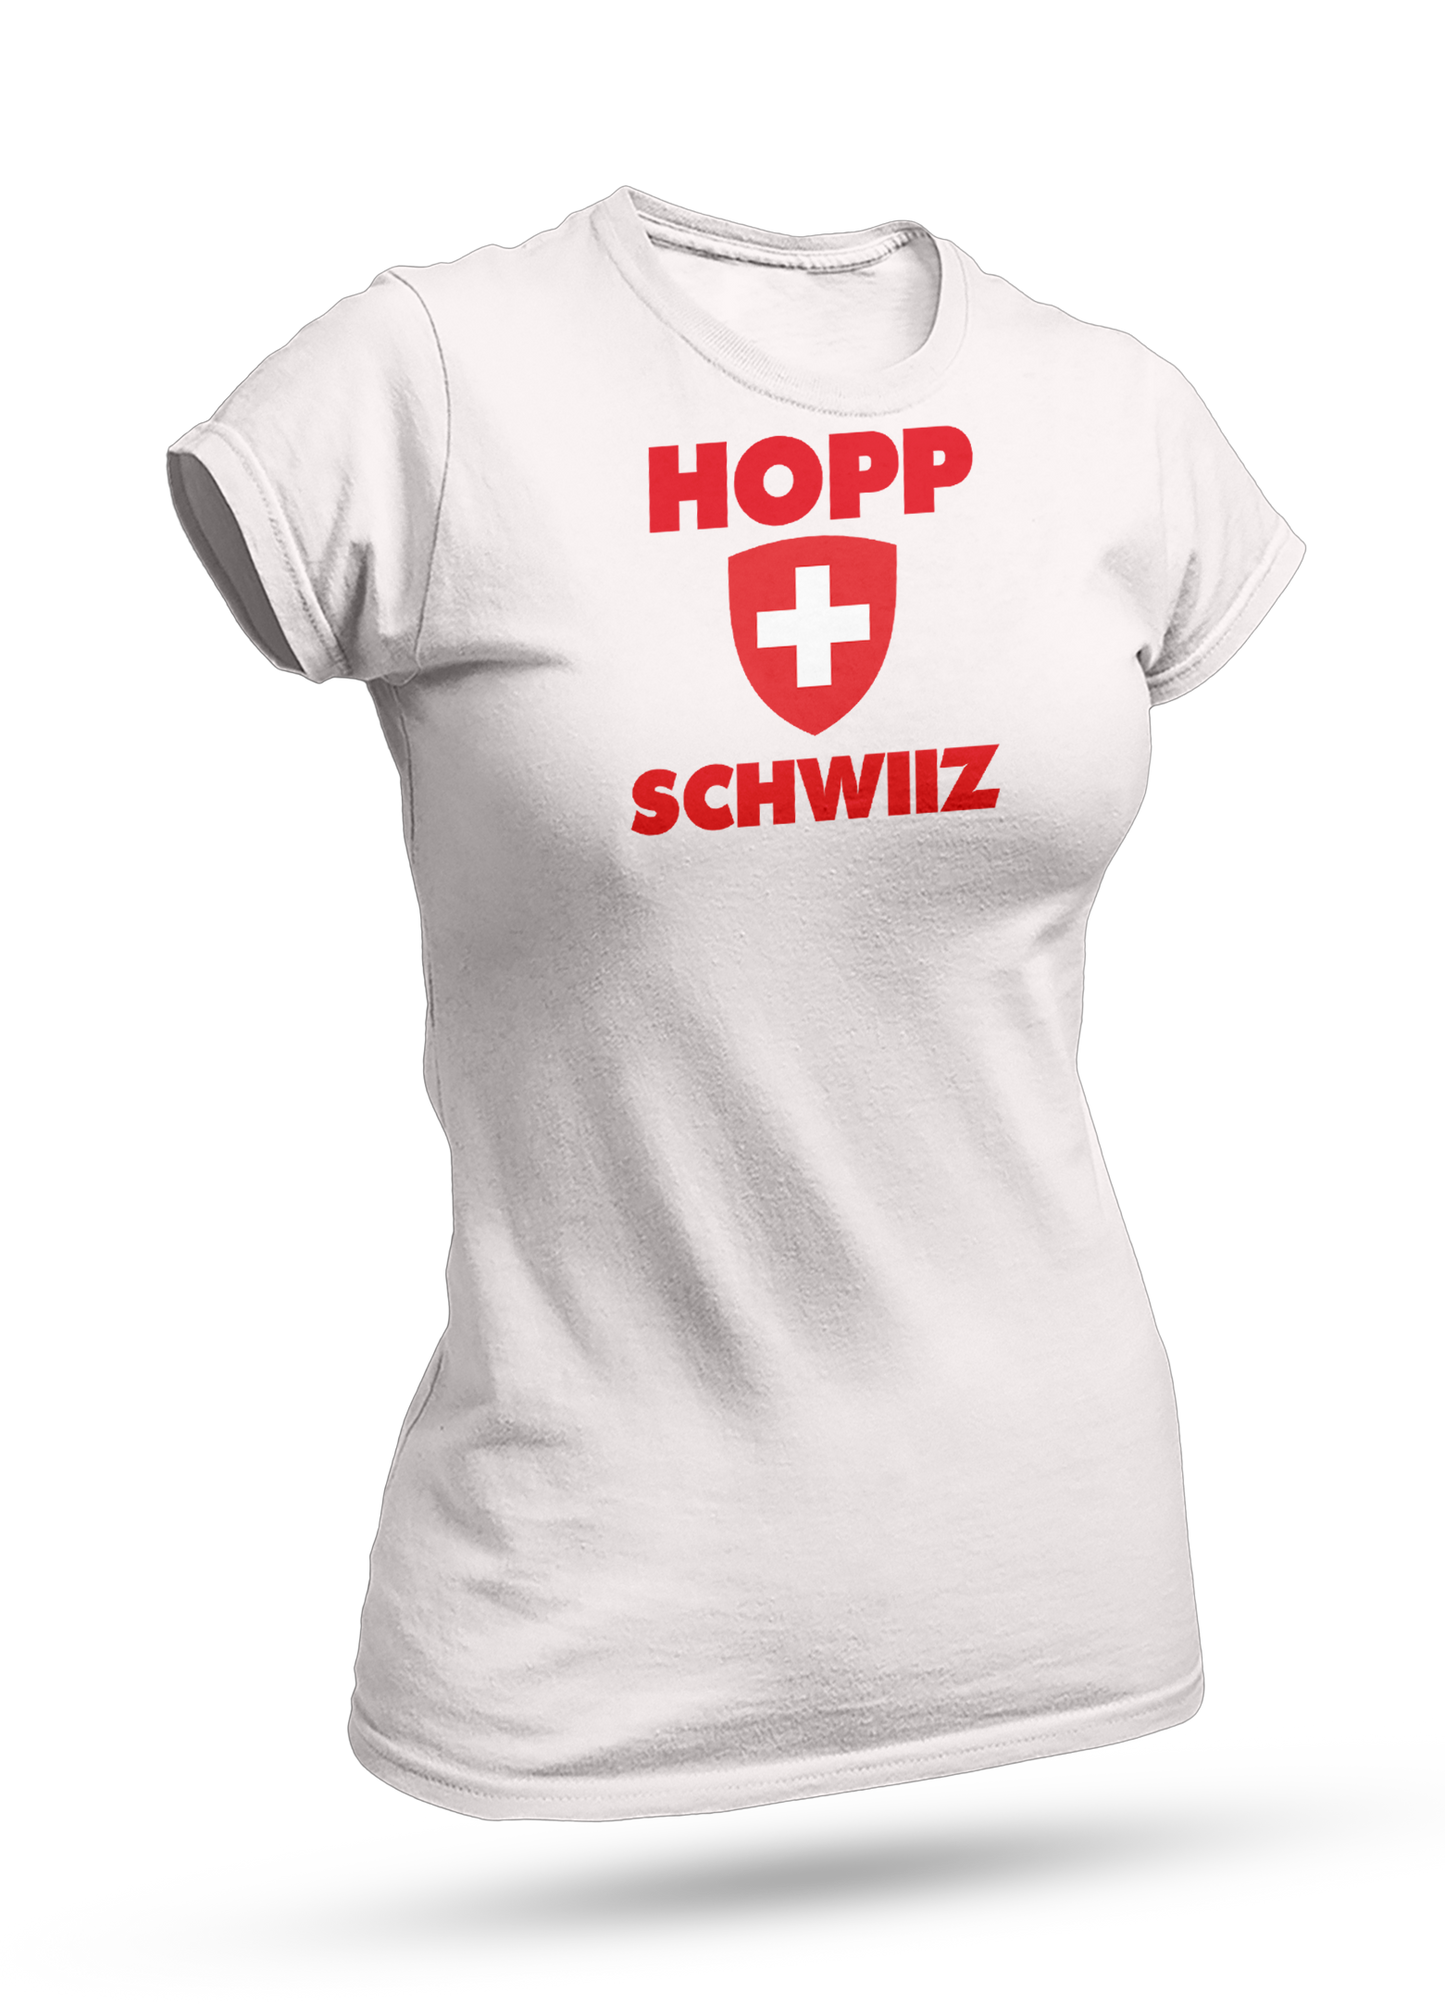 Hopp Switzerland No. 4